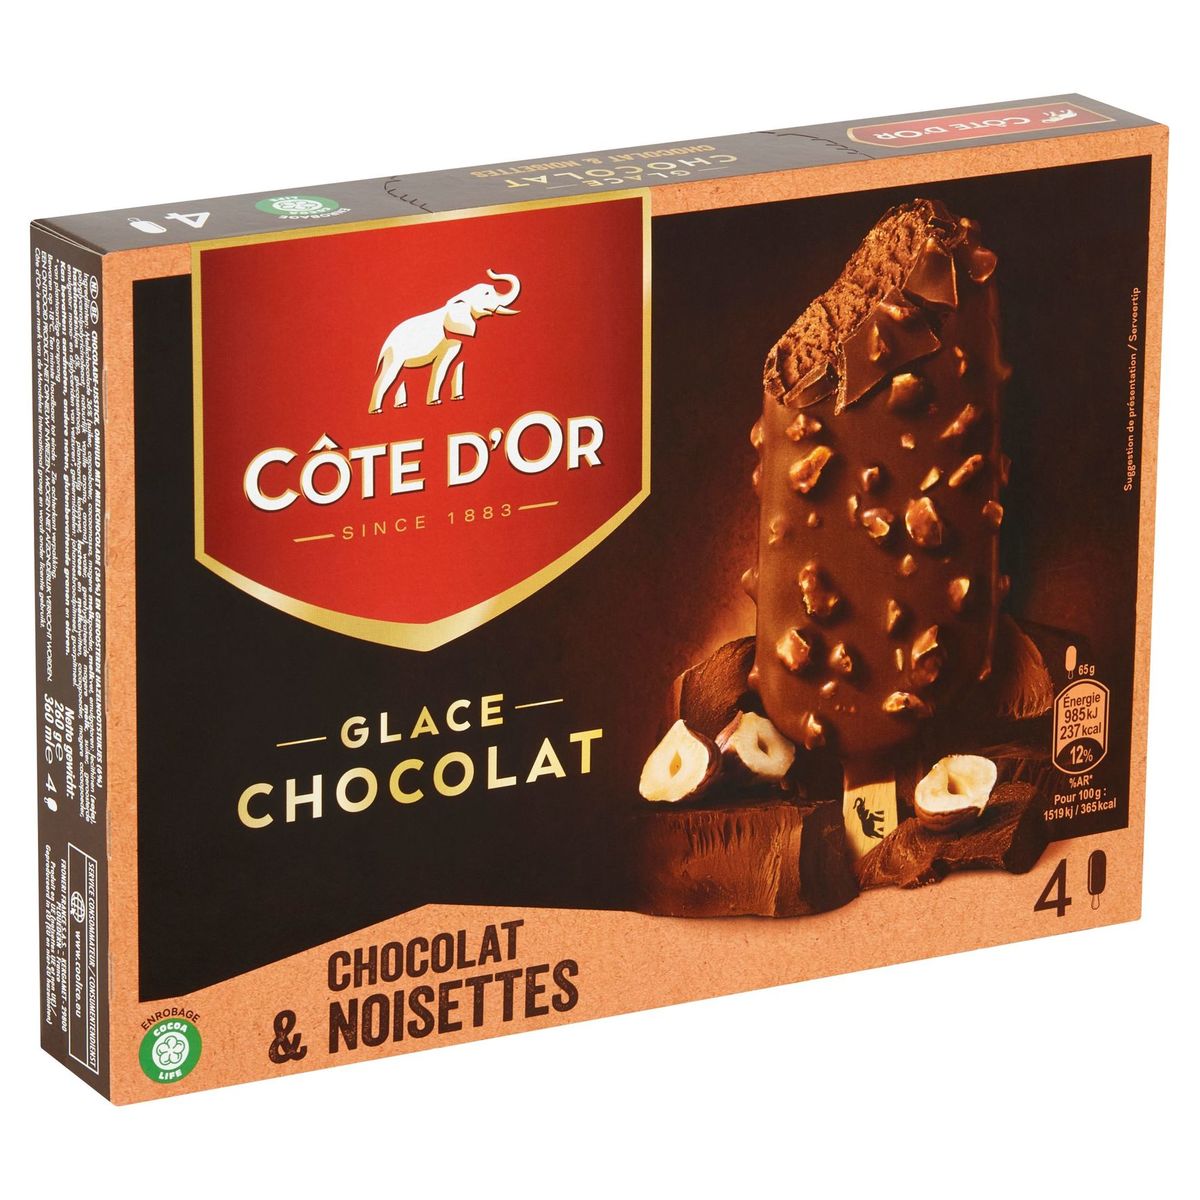 Côte d'Or Glace Chocolat & Noisettes 4 Stuks 260 g